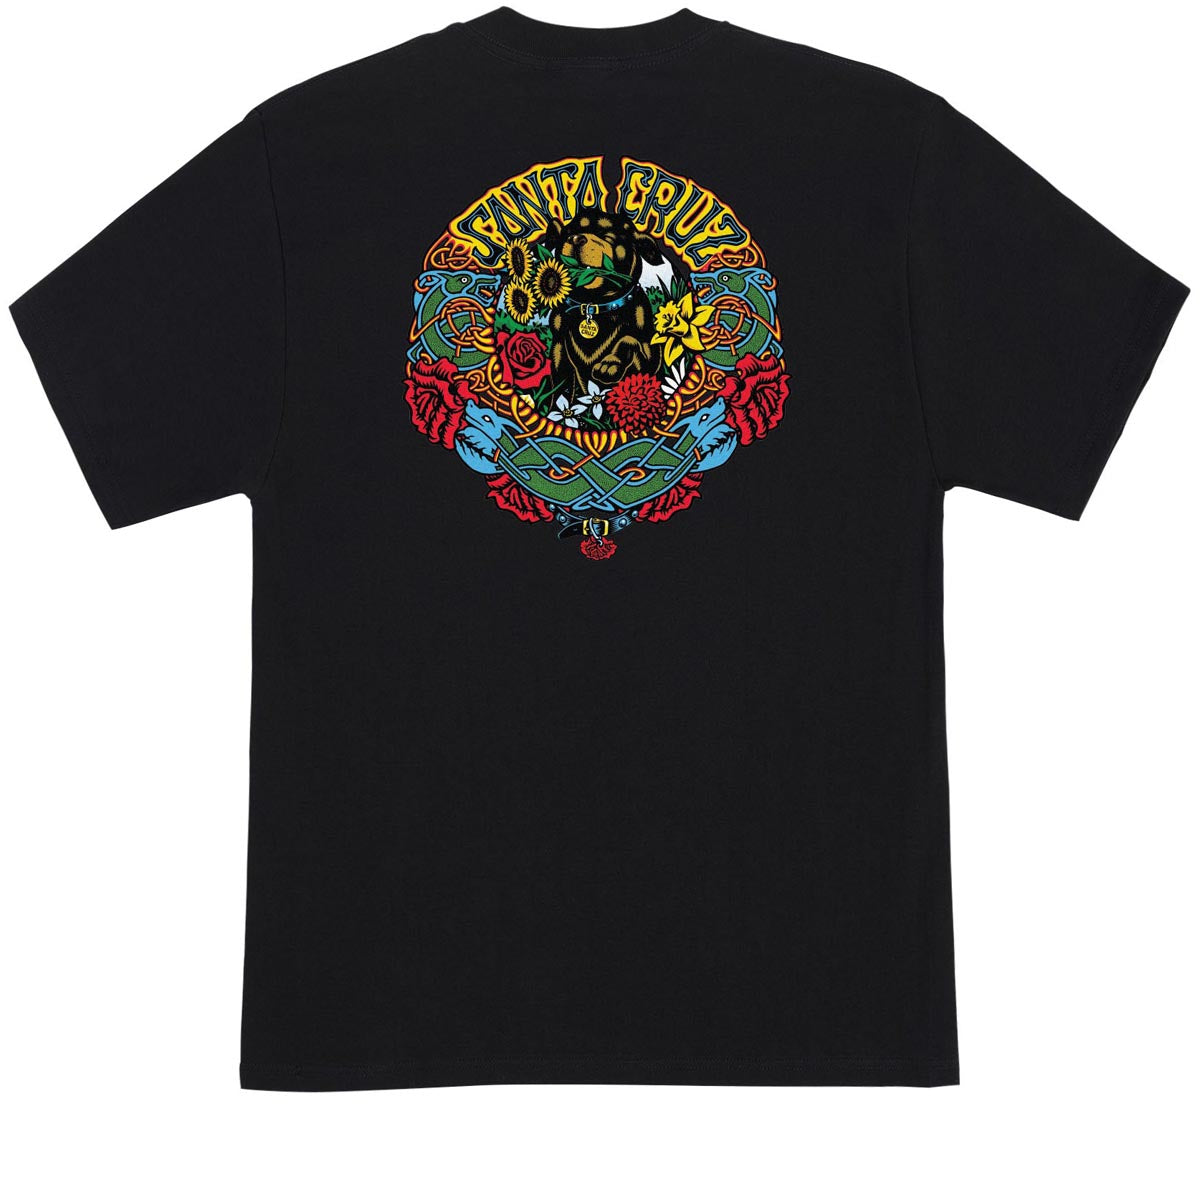 Santa Cruz Dressen Mash Up T-Shirt - Black image 1